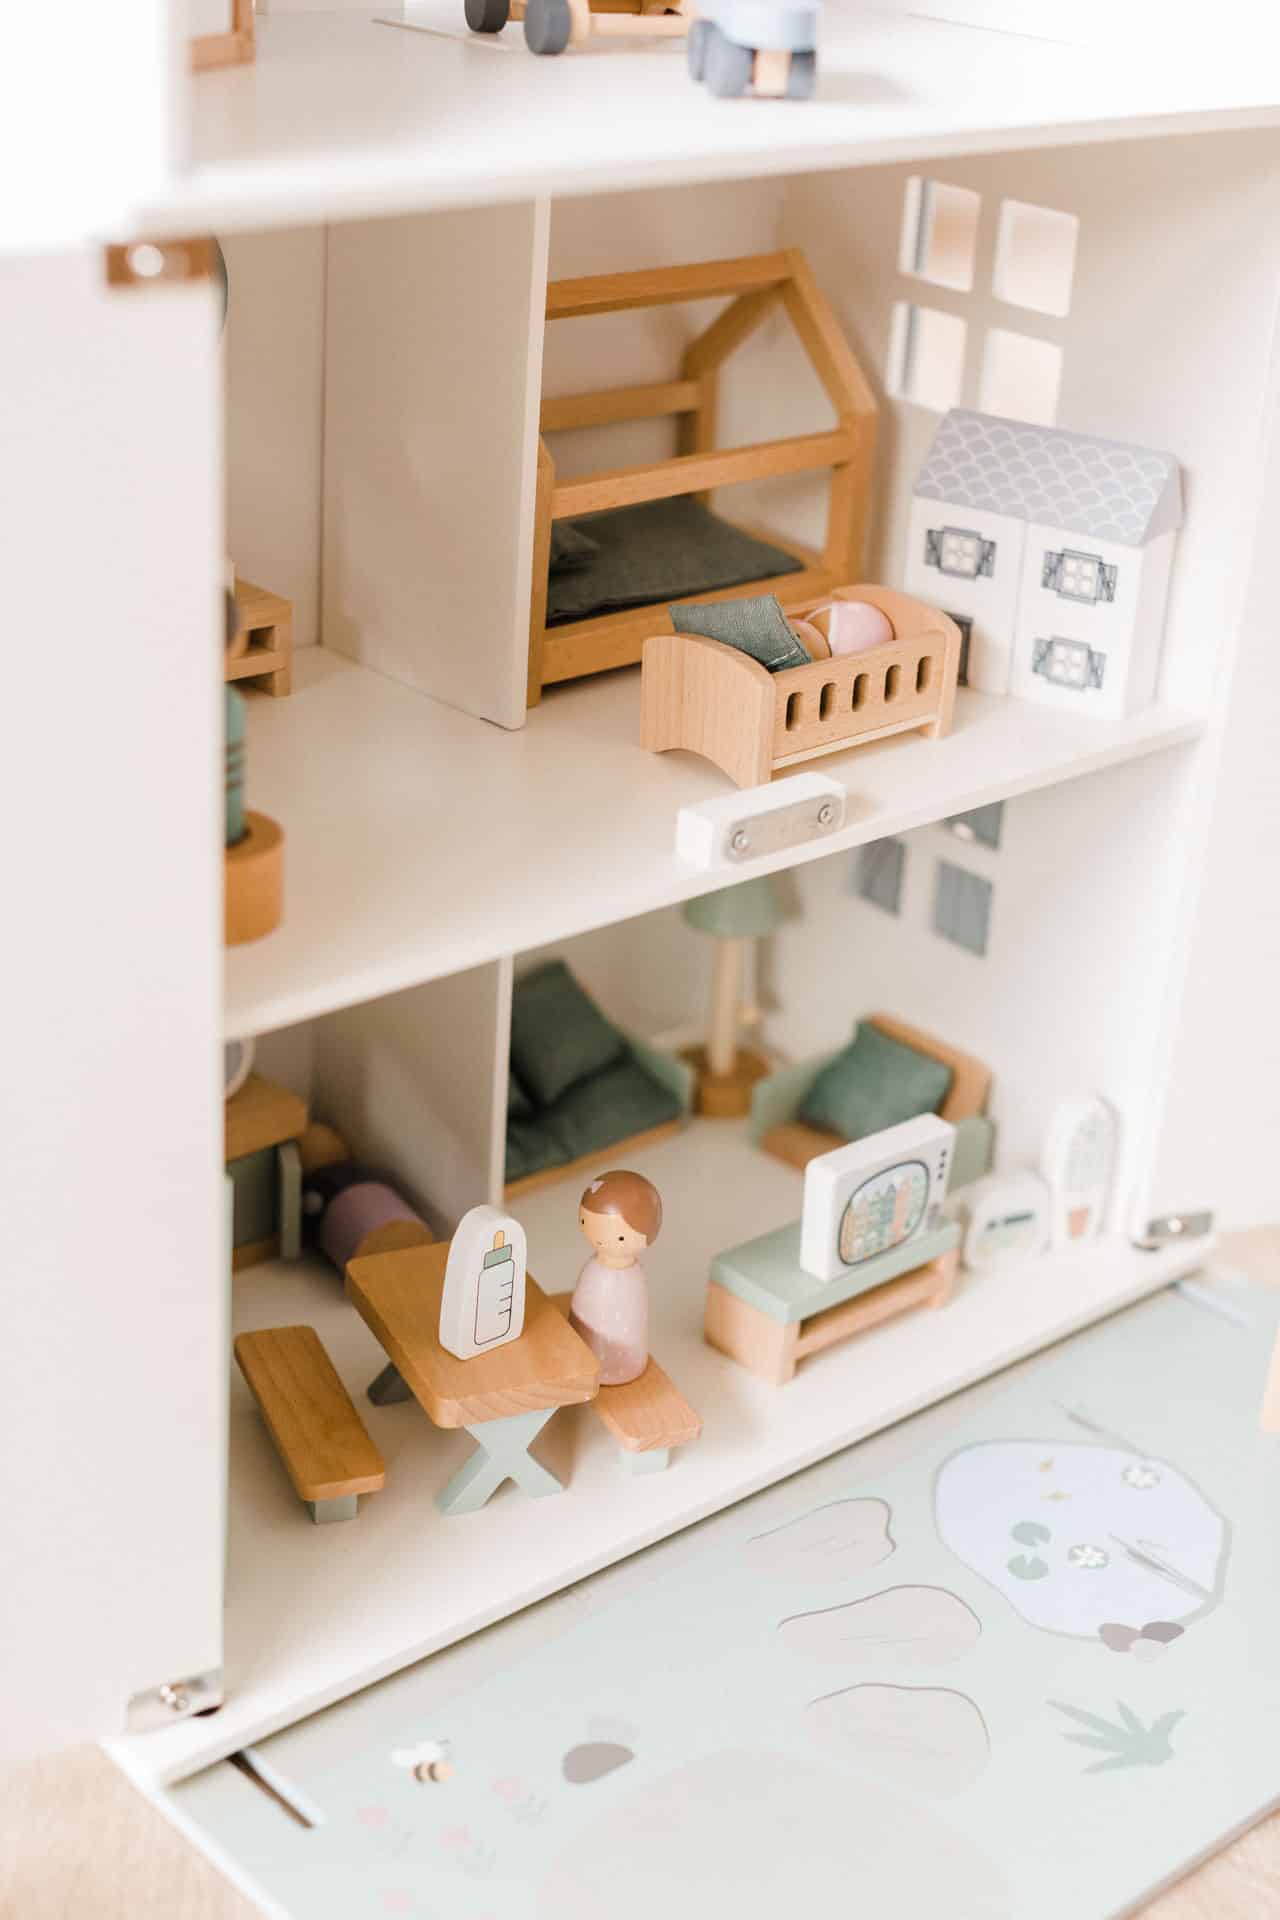 Maison de poupées en bois blanc avec accessoires 18 pcs.